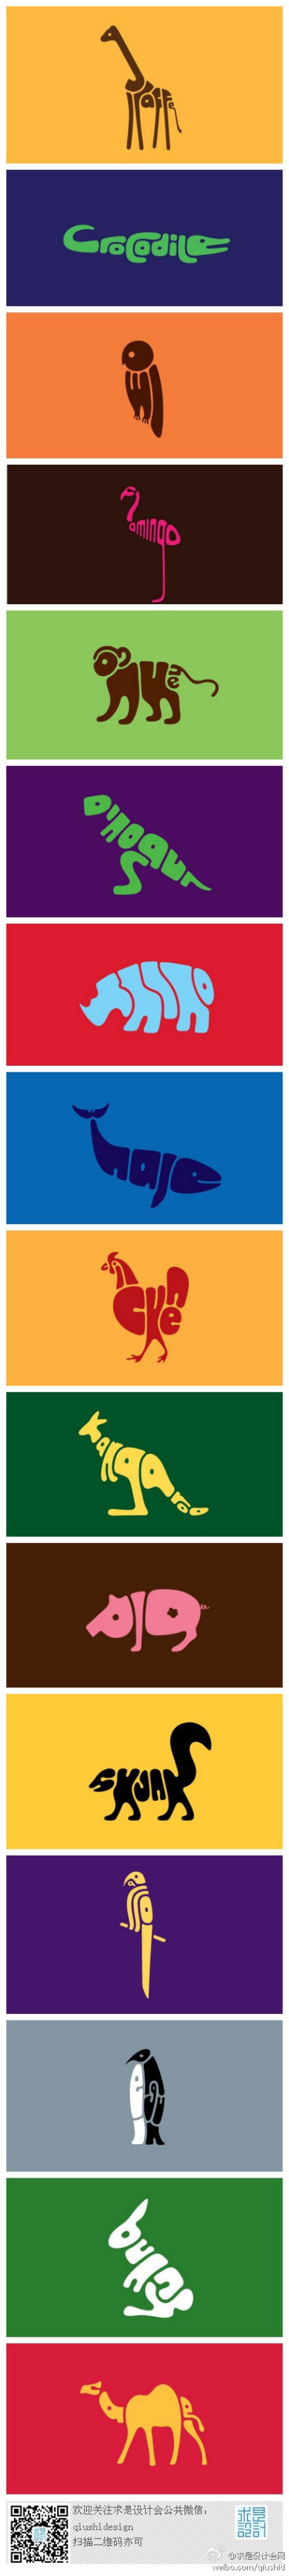 一组以字母构成的动物形象LOGO